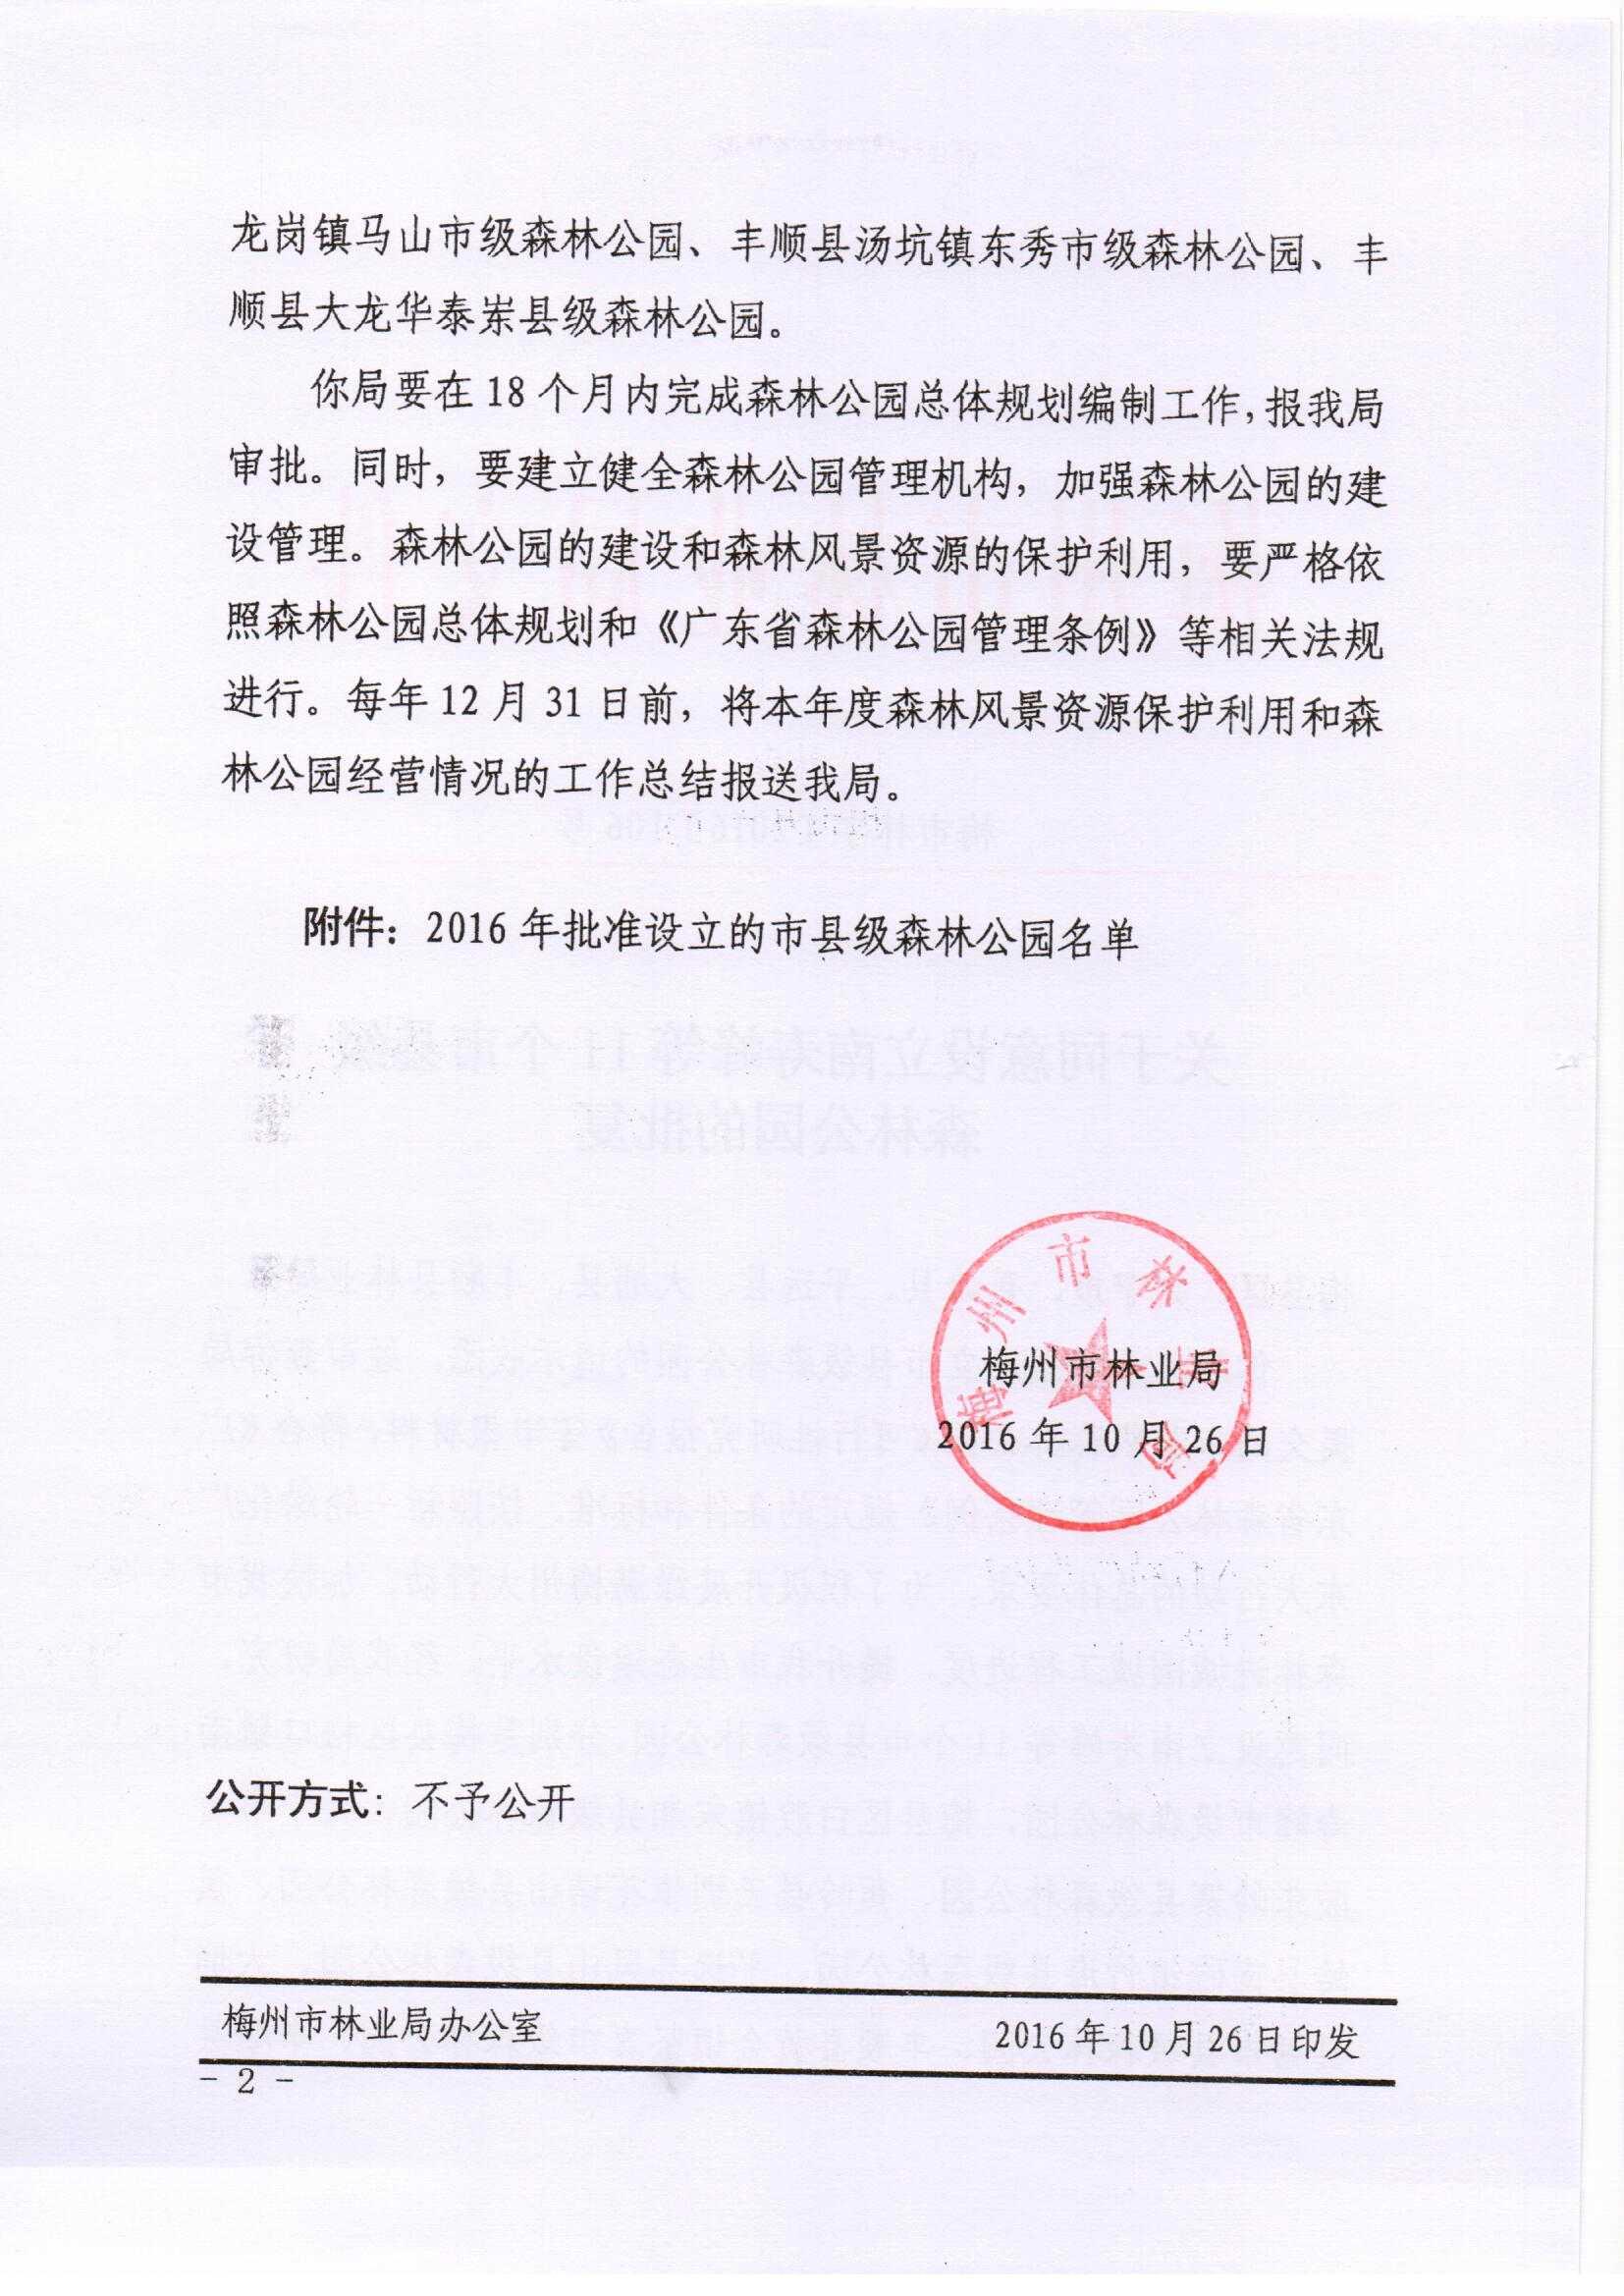 关于同意设立南寿峰等11个市县级森林公园的批复-2016.10.26_页面_2